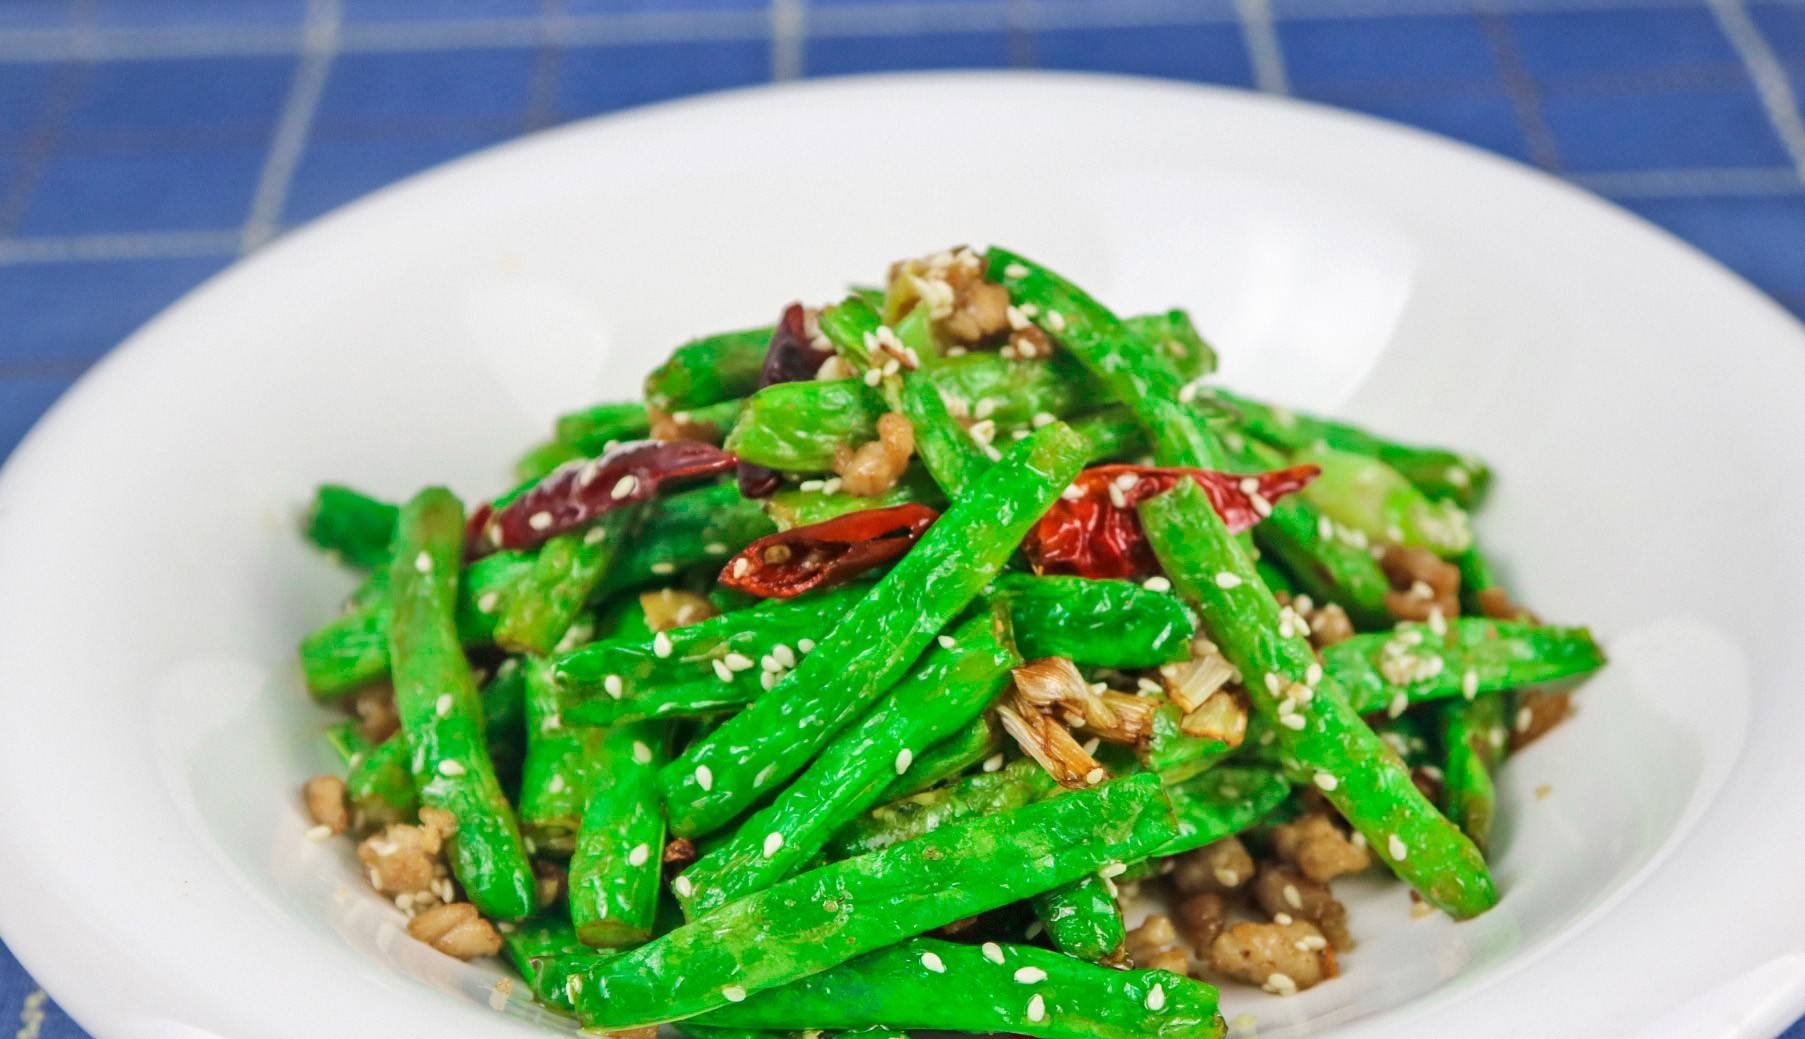 干煸四季豆的做法简单易学美味营养全家人都喜欢吃哟